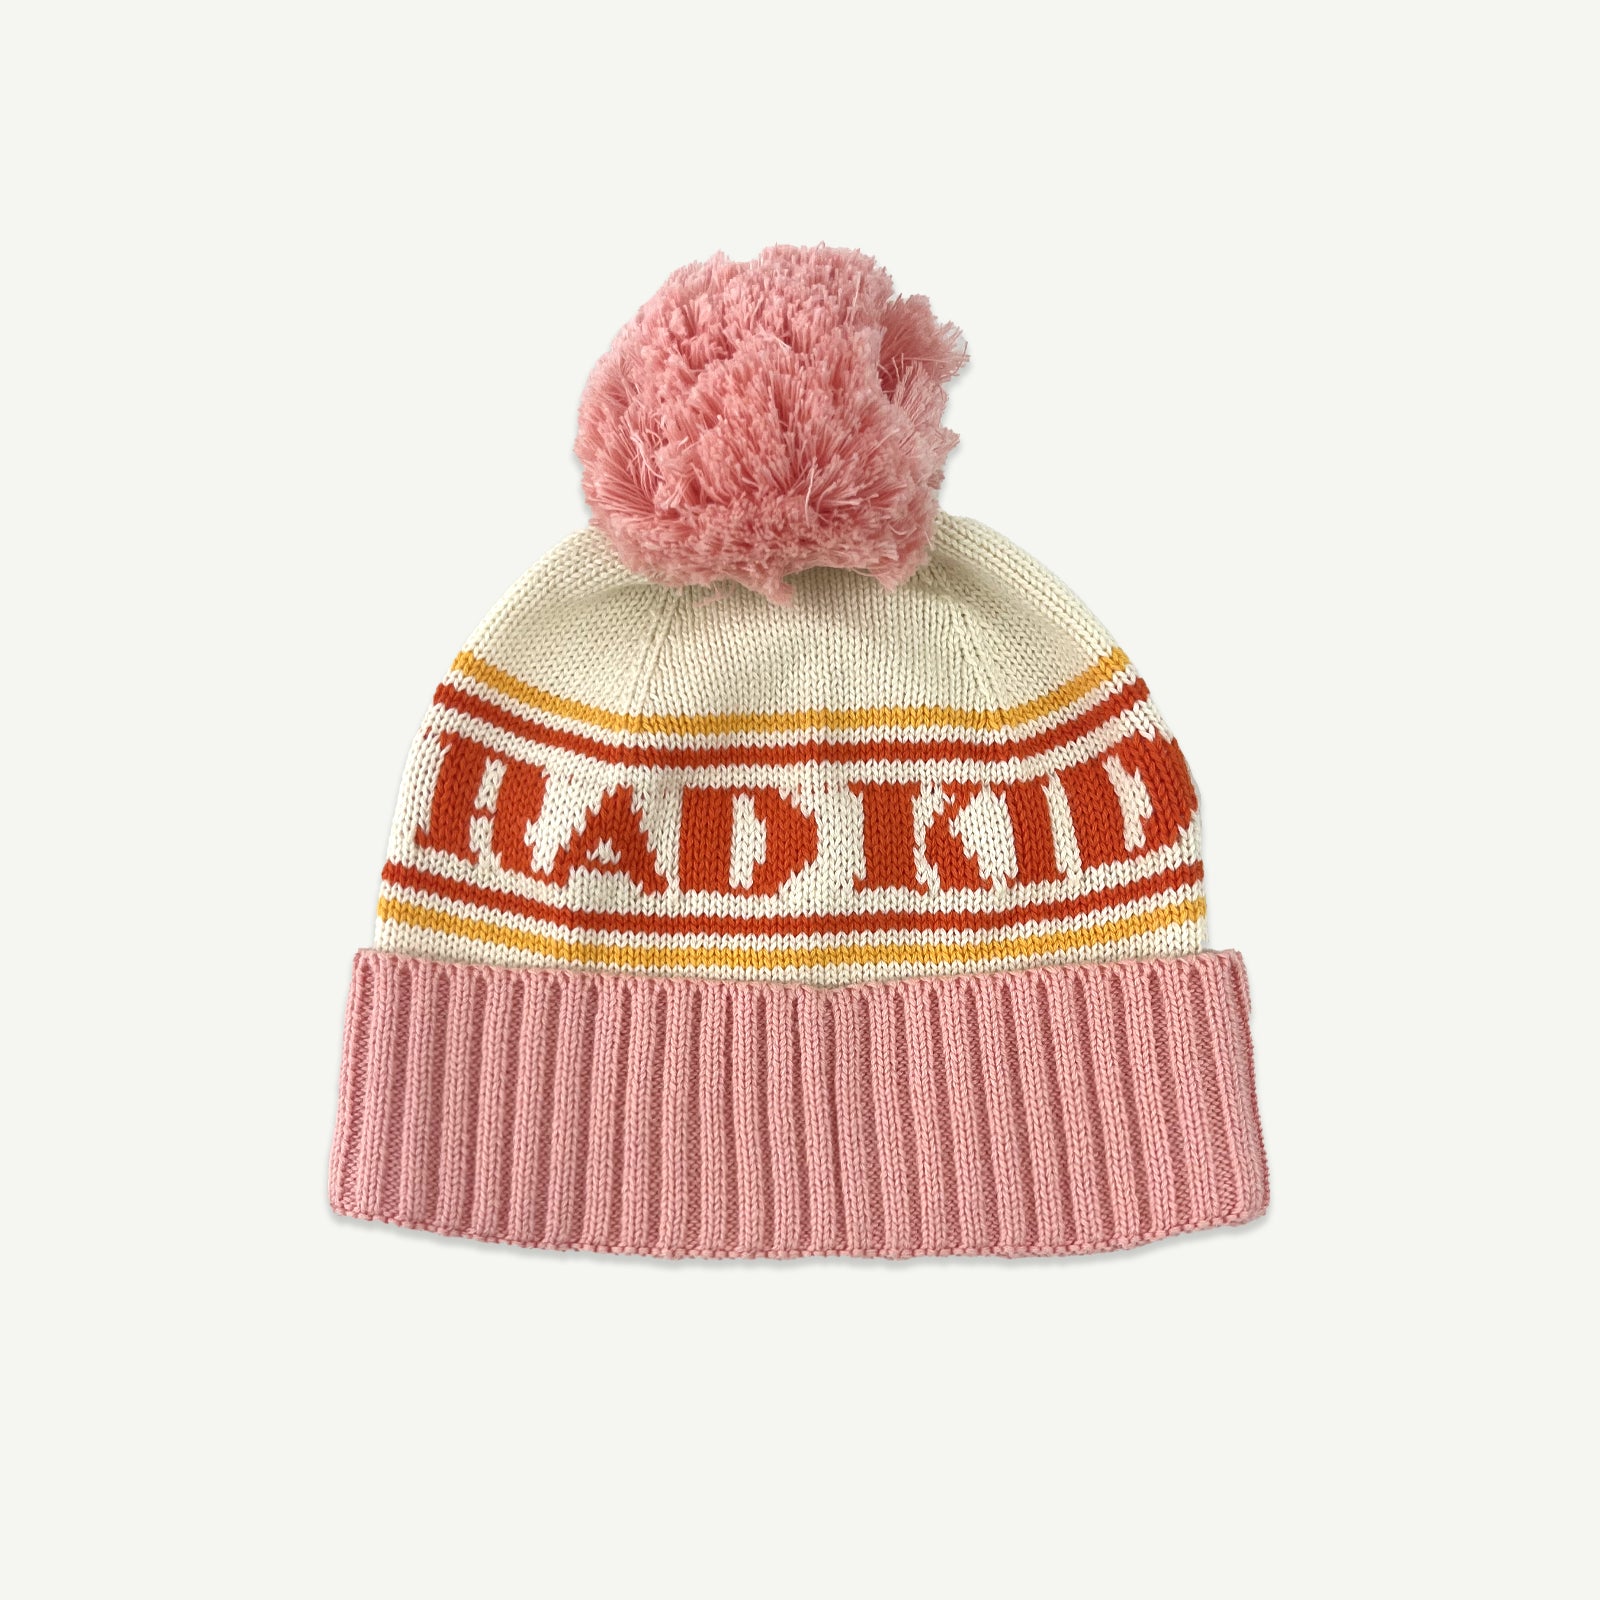 Rad Kid Organic Knit Pom Pom Beanie - Pink